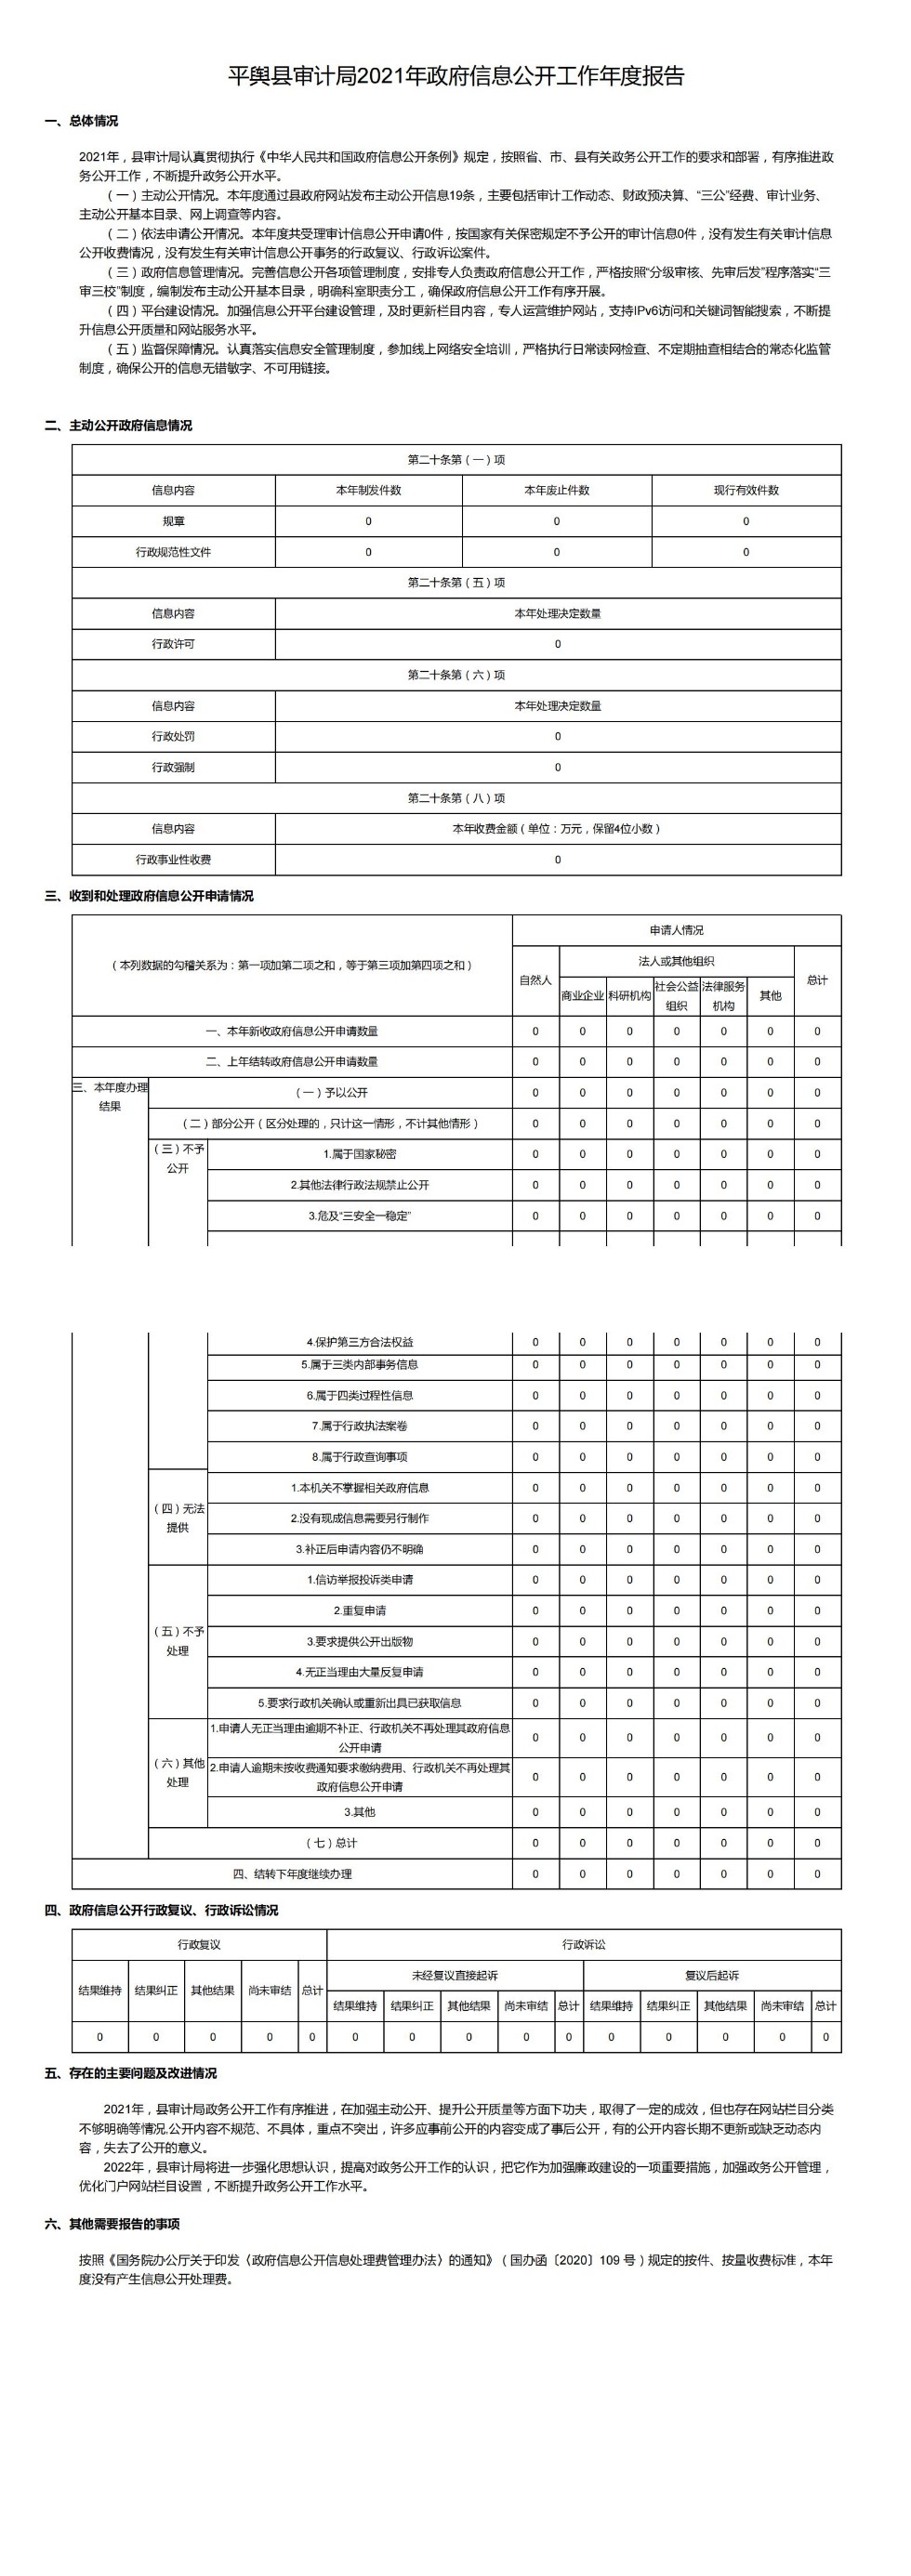 平舆县审计局2021年政府信息公开工作年度报告_00.jpg